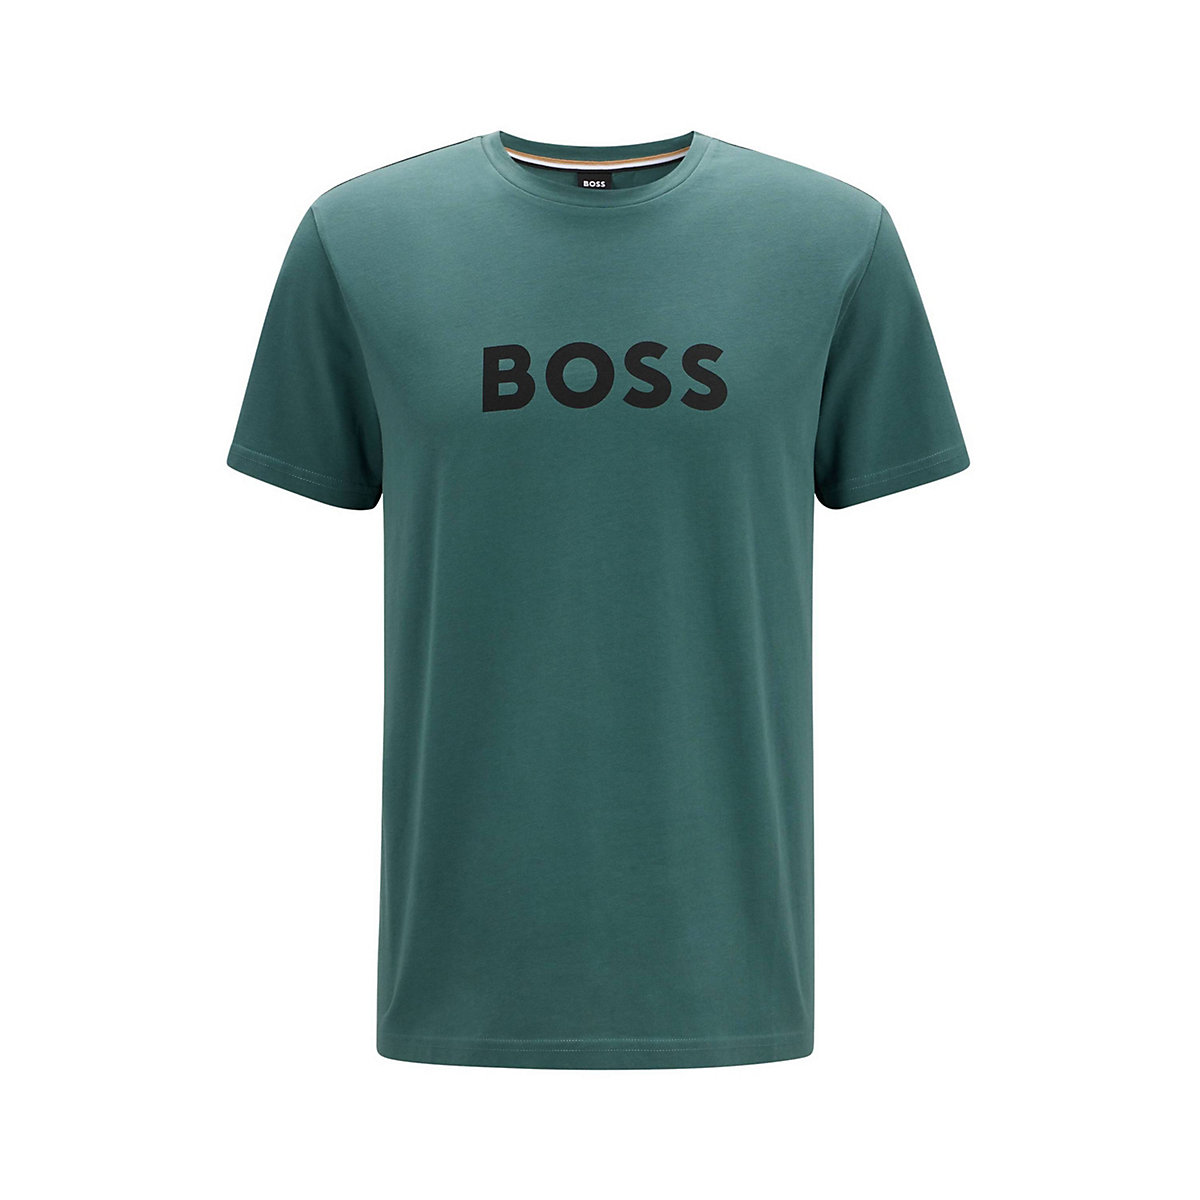 BOSS Herren T-Shirt kurzarm T-Shirt RN Rundhals großer Logodruck UV-Protection Baumwolle T-Shirts grün